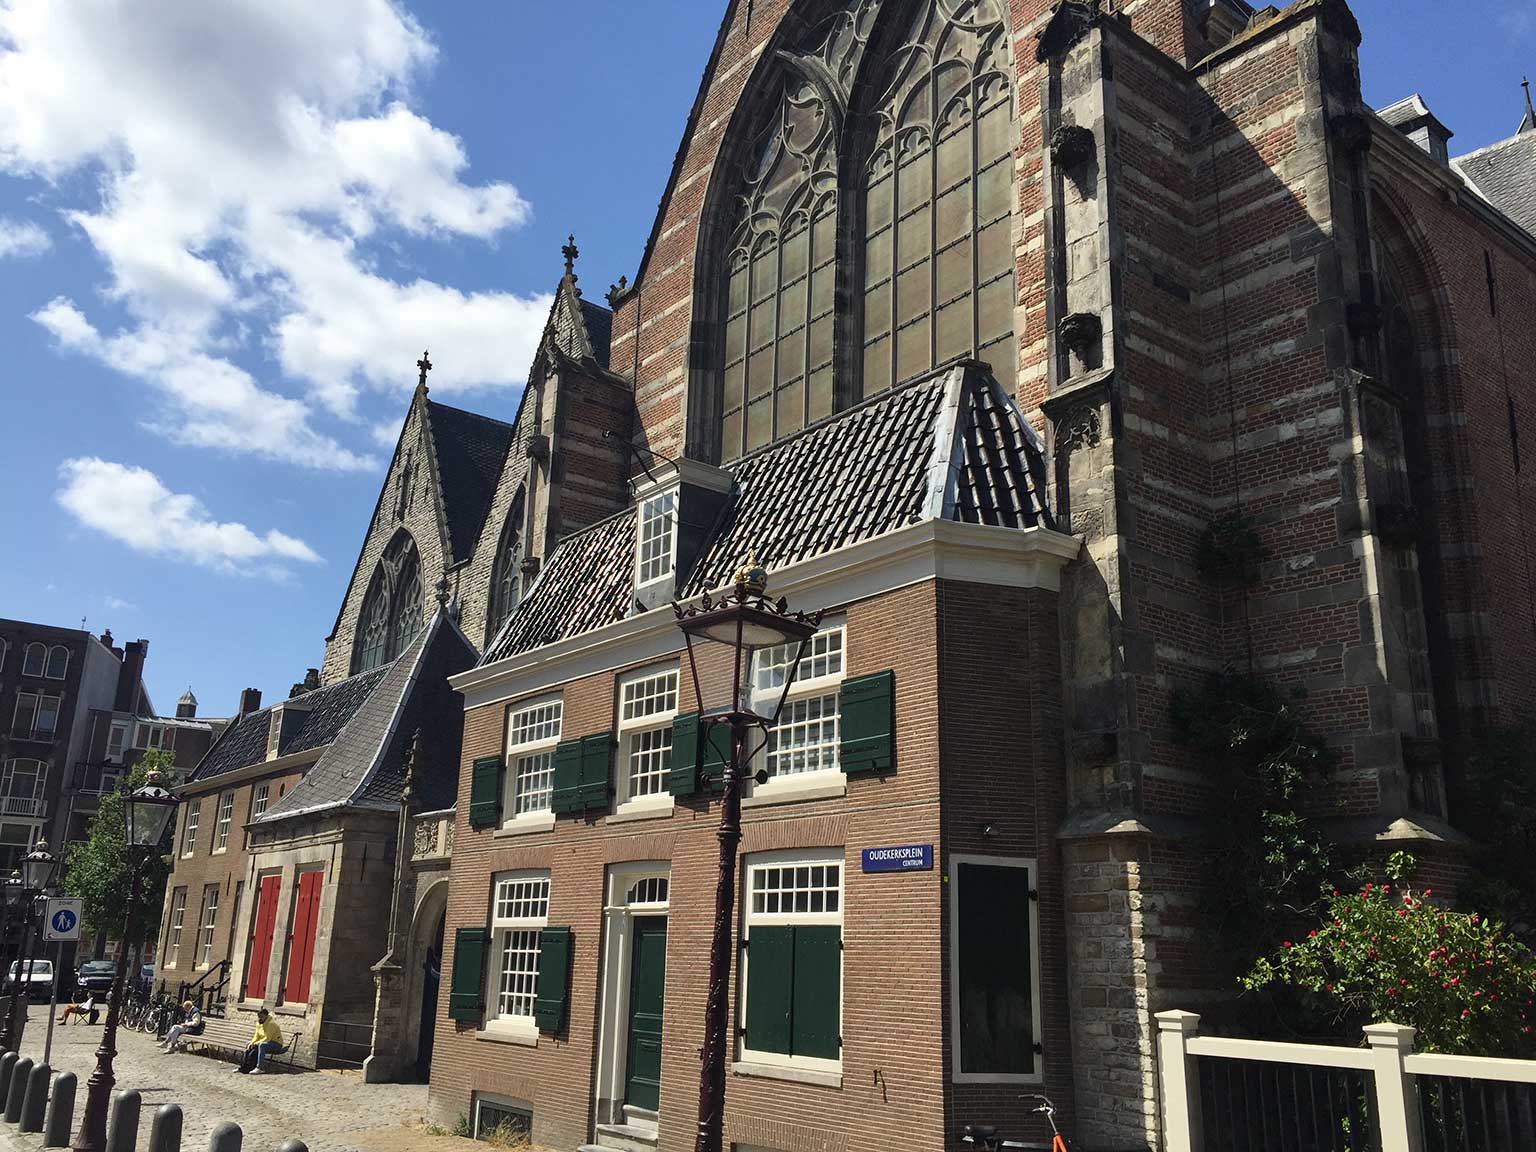 Oude Kerk, Amsterdam, seen from the Oudekerksplein